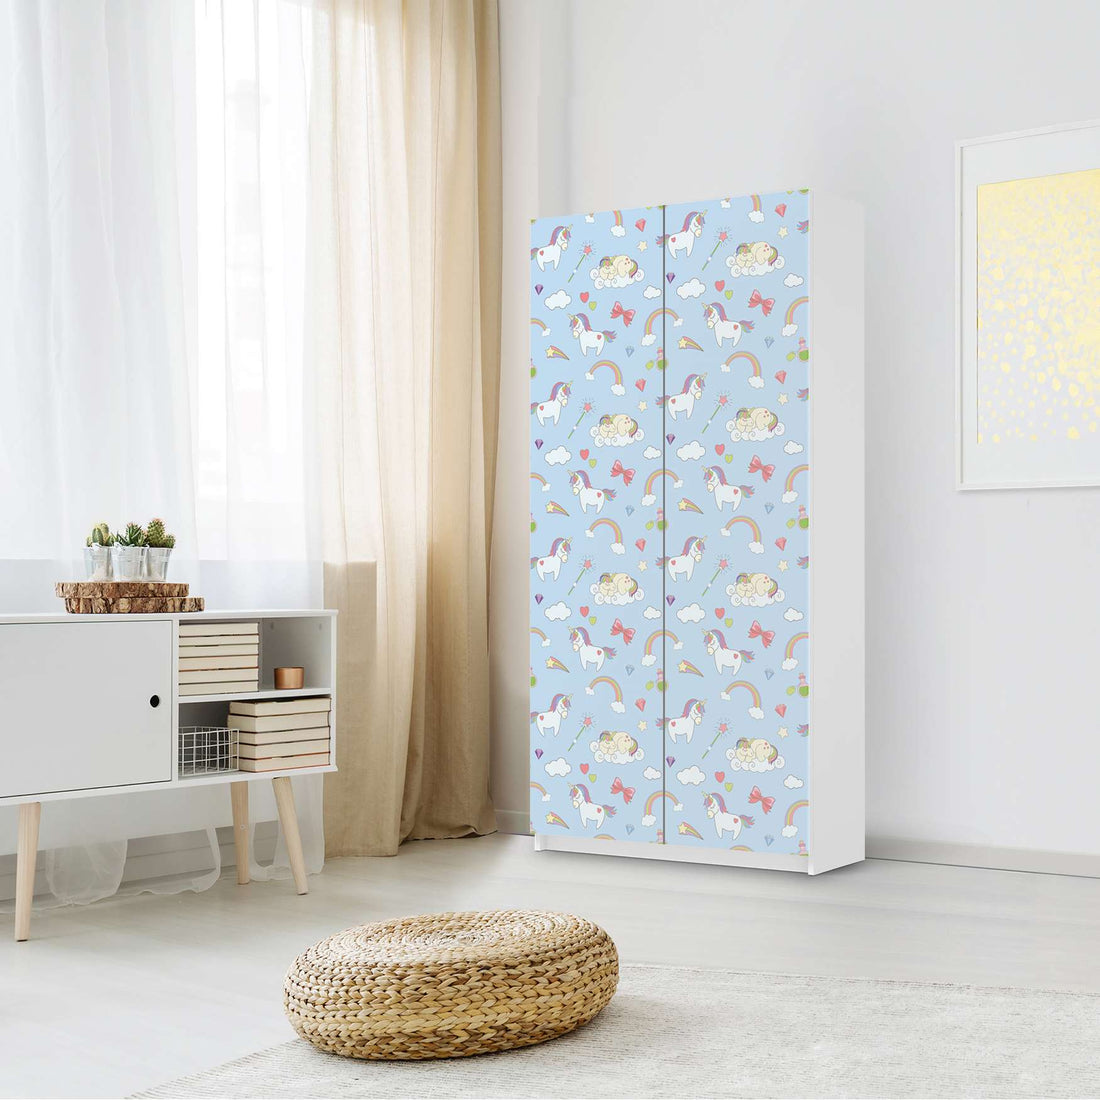 Klebefolie für Möbel Rainbow Unicorn - IKEA Pax Schrank 201 cm Höhe - 2 Türen - Kinderzimmer